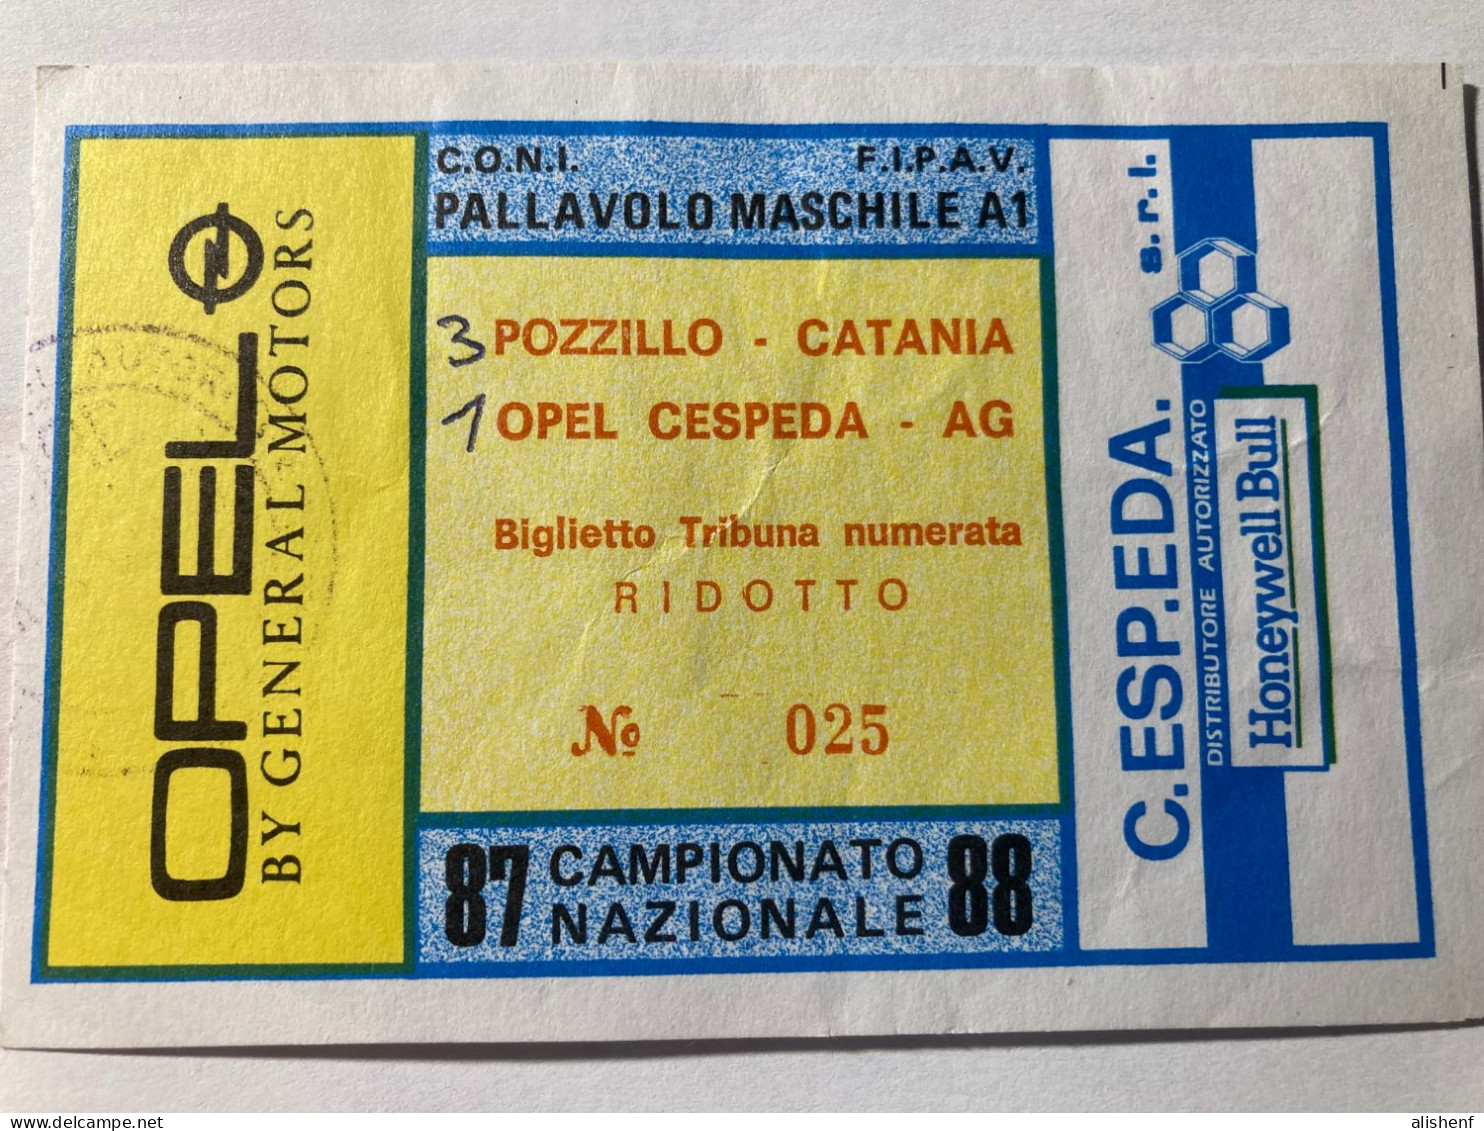 Biglietto Pallavolo Mascile Serie A1 Opel Cespeda Agrigento Pozzillo Catania Campionato 1987-88 - Tickets - Entradas